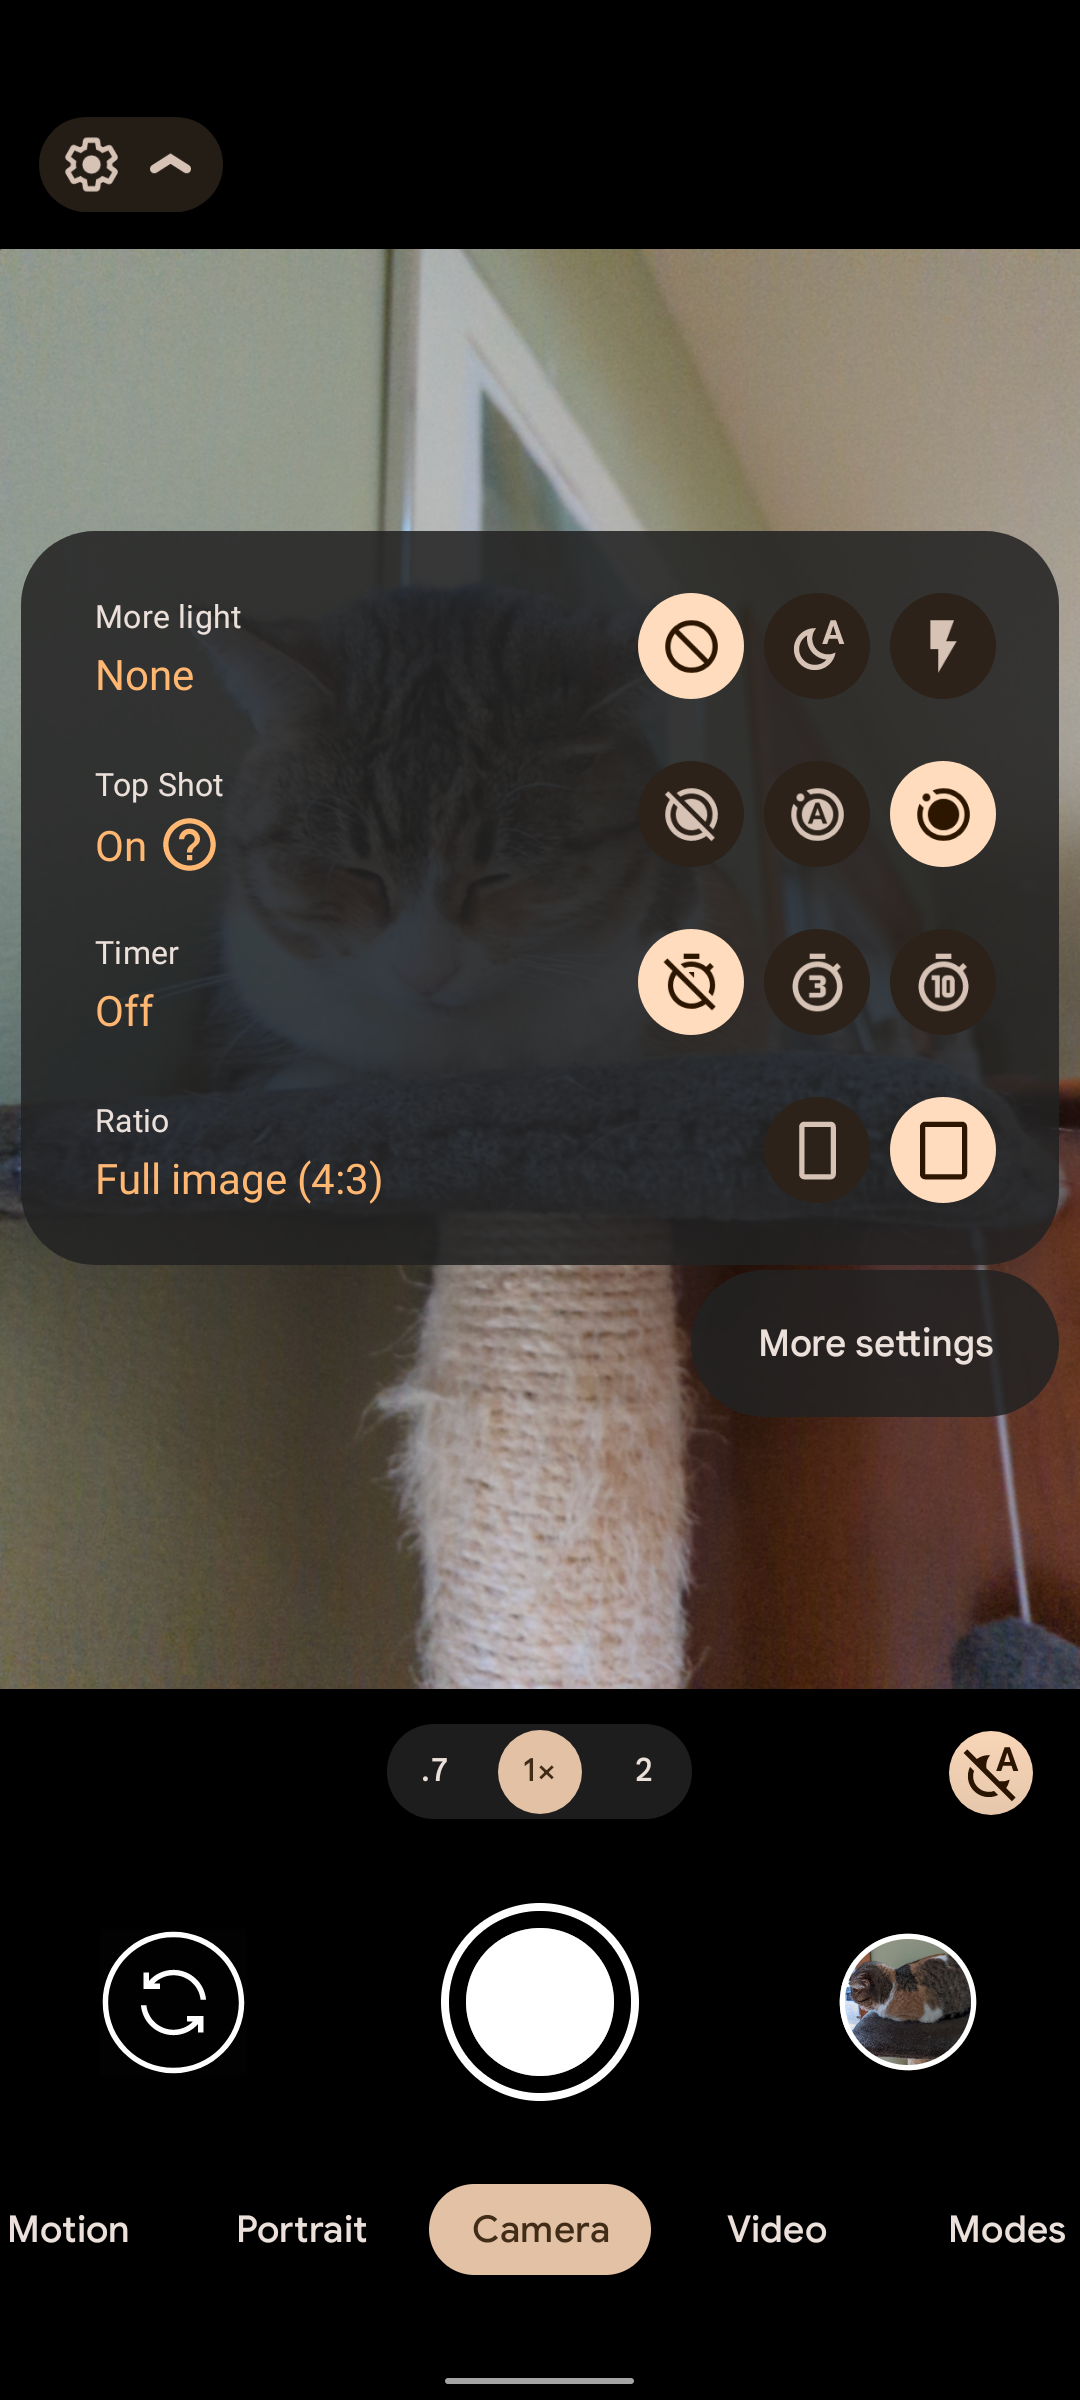 Captura de tela das configurações da câmera do smartphone Google Pixel